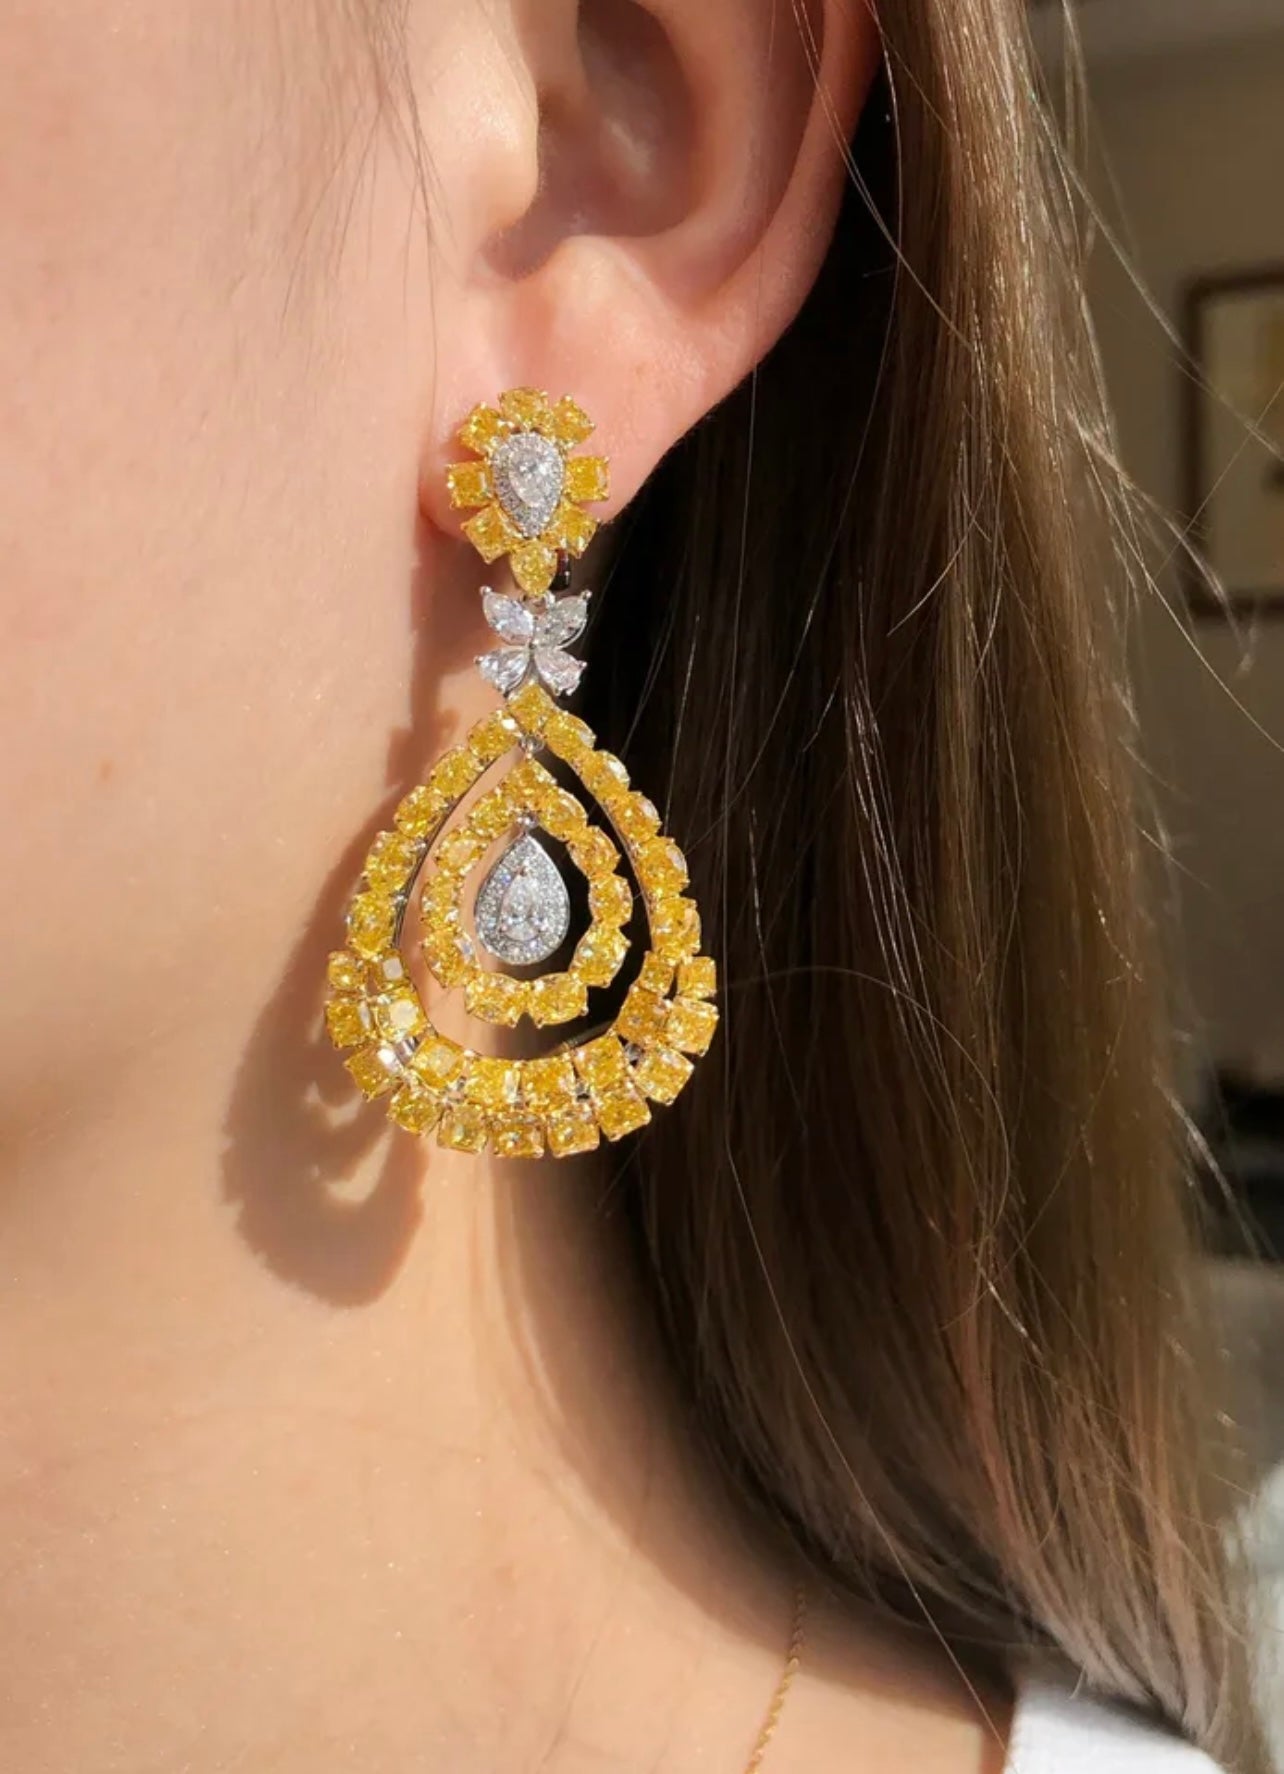 12.00 Carats Fancy Vivid Yellow Diamond Earrings Solid 18K WG Gold